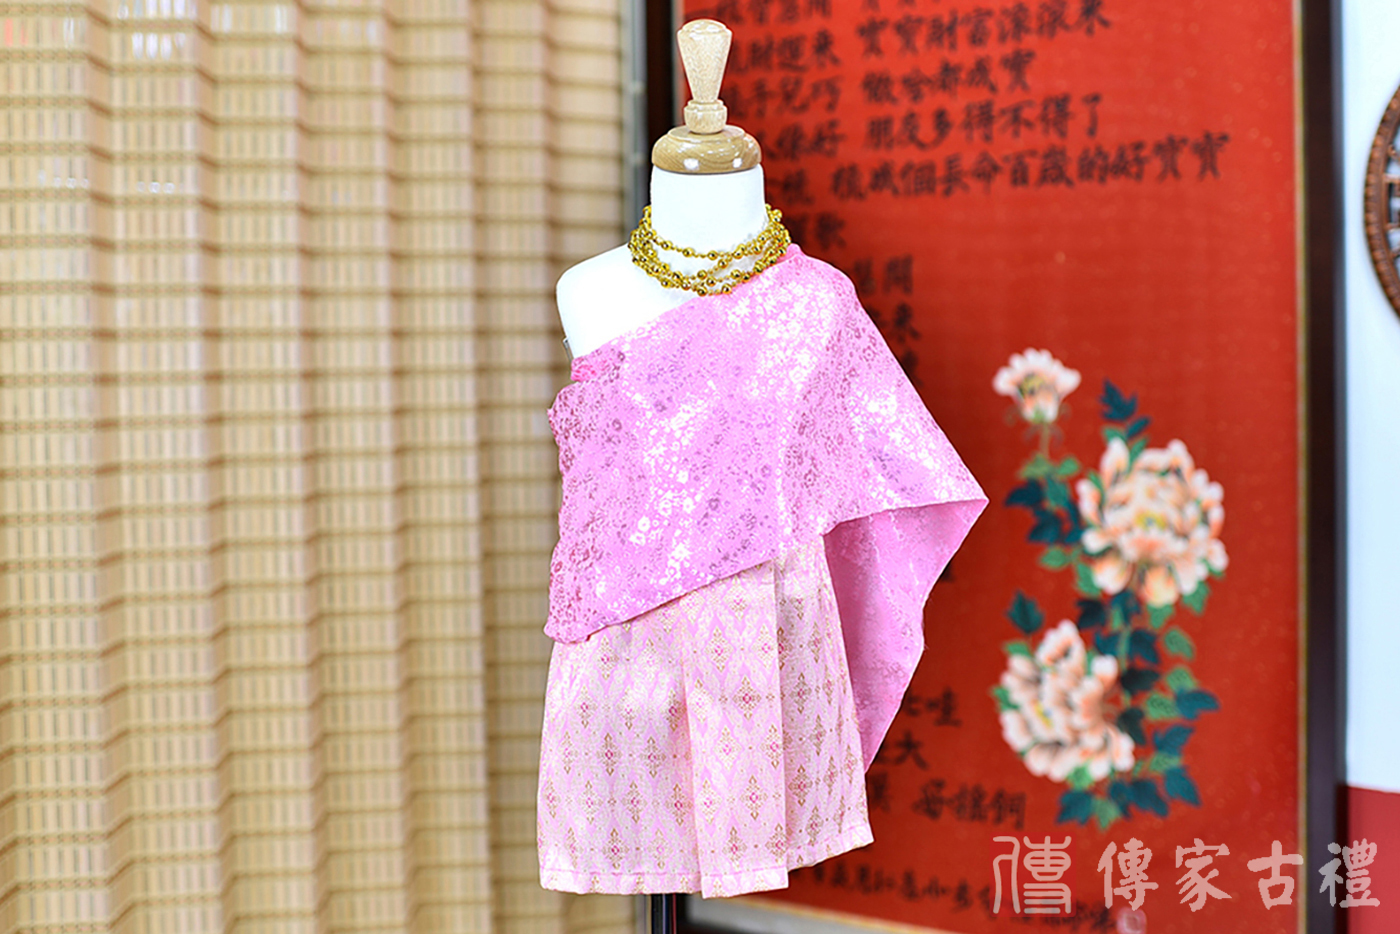 2024-02-23小孩皇室泰服古裝禮服。淺粉紫色的紋路披肩上衣搭配粉色泰國圖案裙裝的泰式古裝禮服。照片集